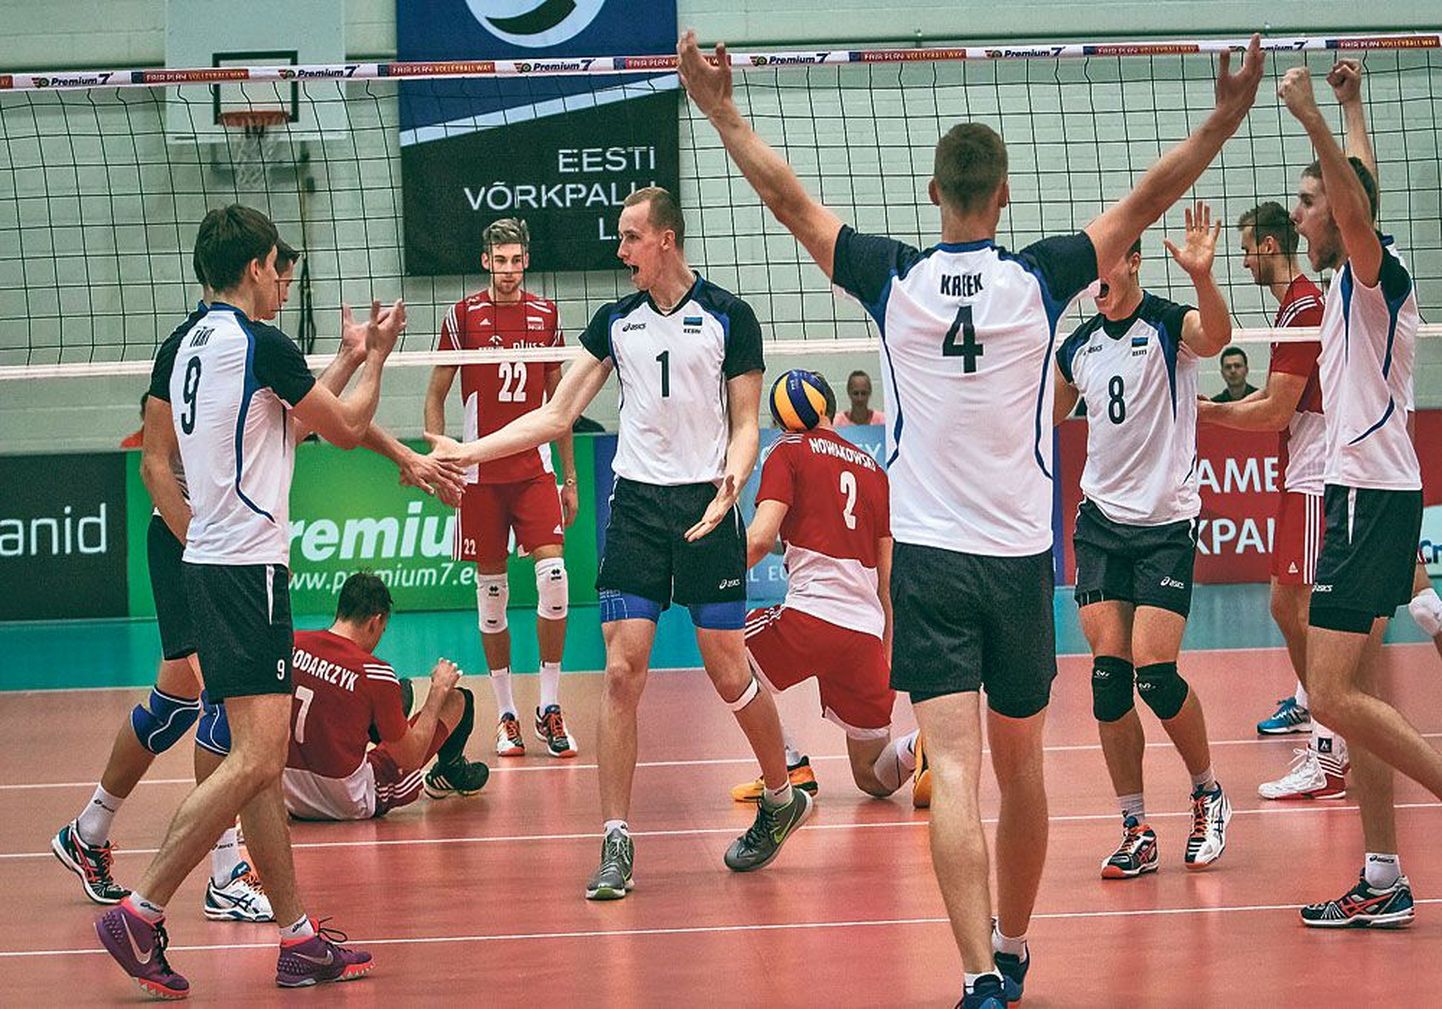 Эстонская сборная по волейболу и во второй встрече обыграла Польшу и продолжает лидировать в своей подгруппе Европейской лиги.